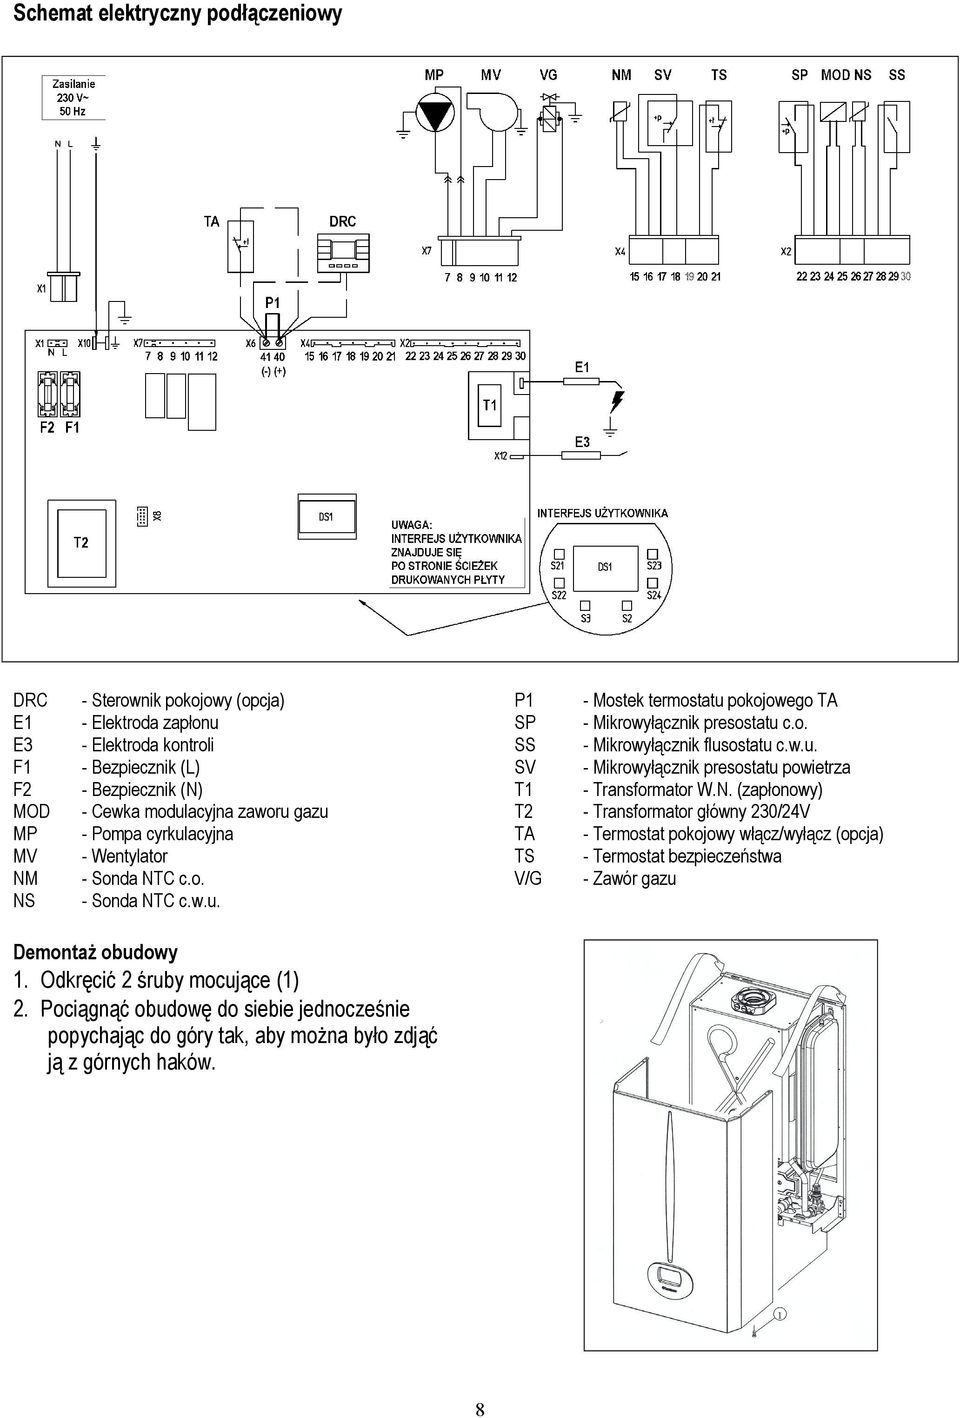 w.u. SV - Mikrowyłącznik presostatu powietrza T1 - Transformator W.N.